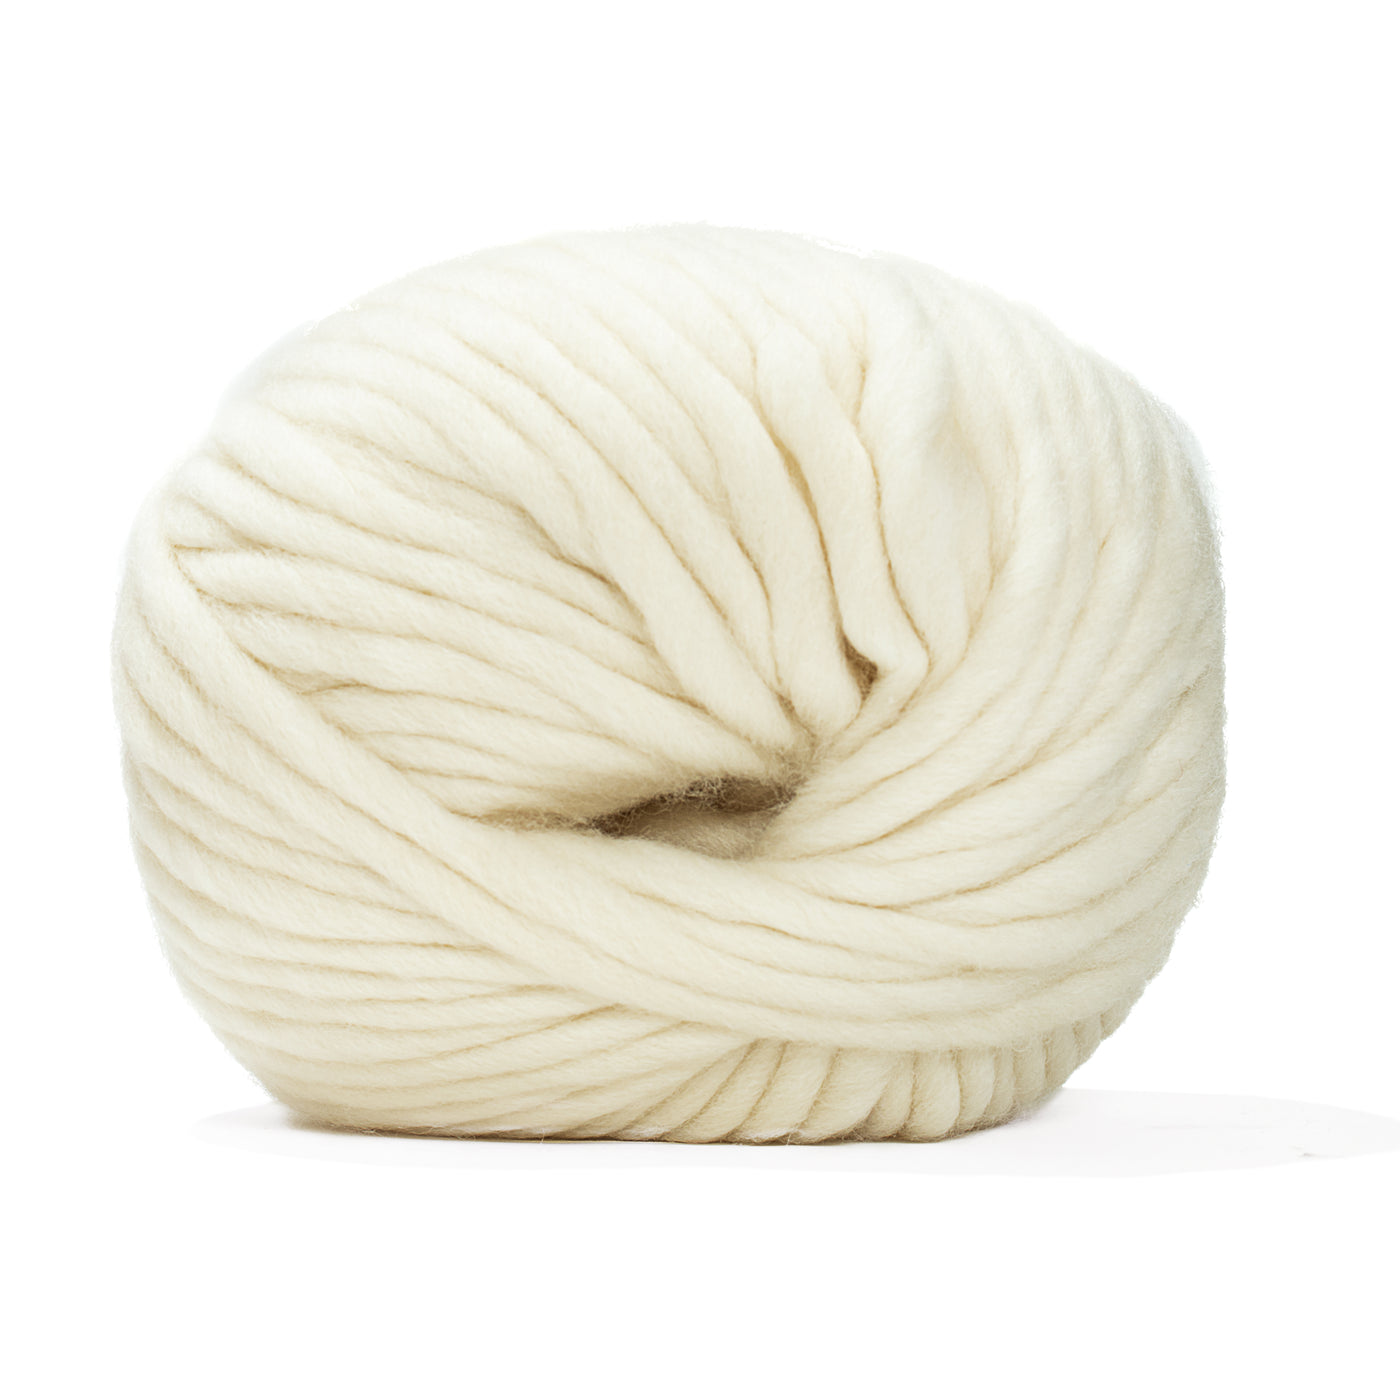 Bulk Chunky Knit Yarn